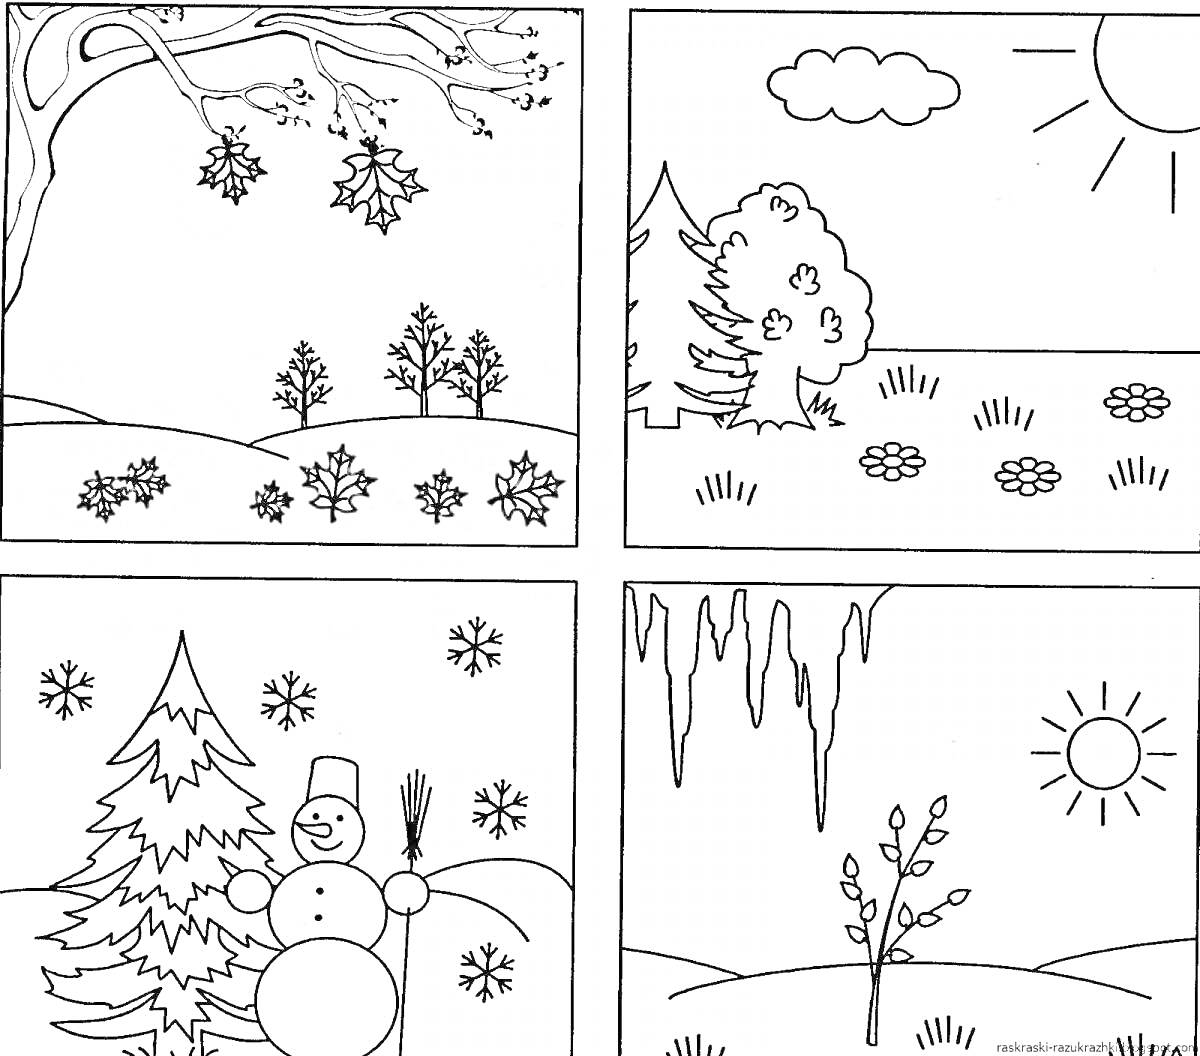 Раскраска Времена года для детей 4-5 лет. Зима: снег, снеговик, елка. Весна: капель, солнечный день, почки на деревьях. Лето: солнце, облако, цветы, дерево, кусты. Осень: дерево с падающими листьями, опавшие листья на земле.